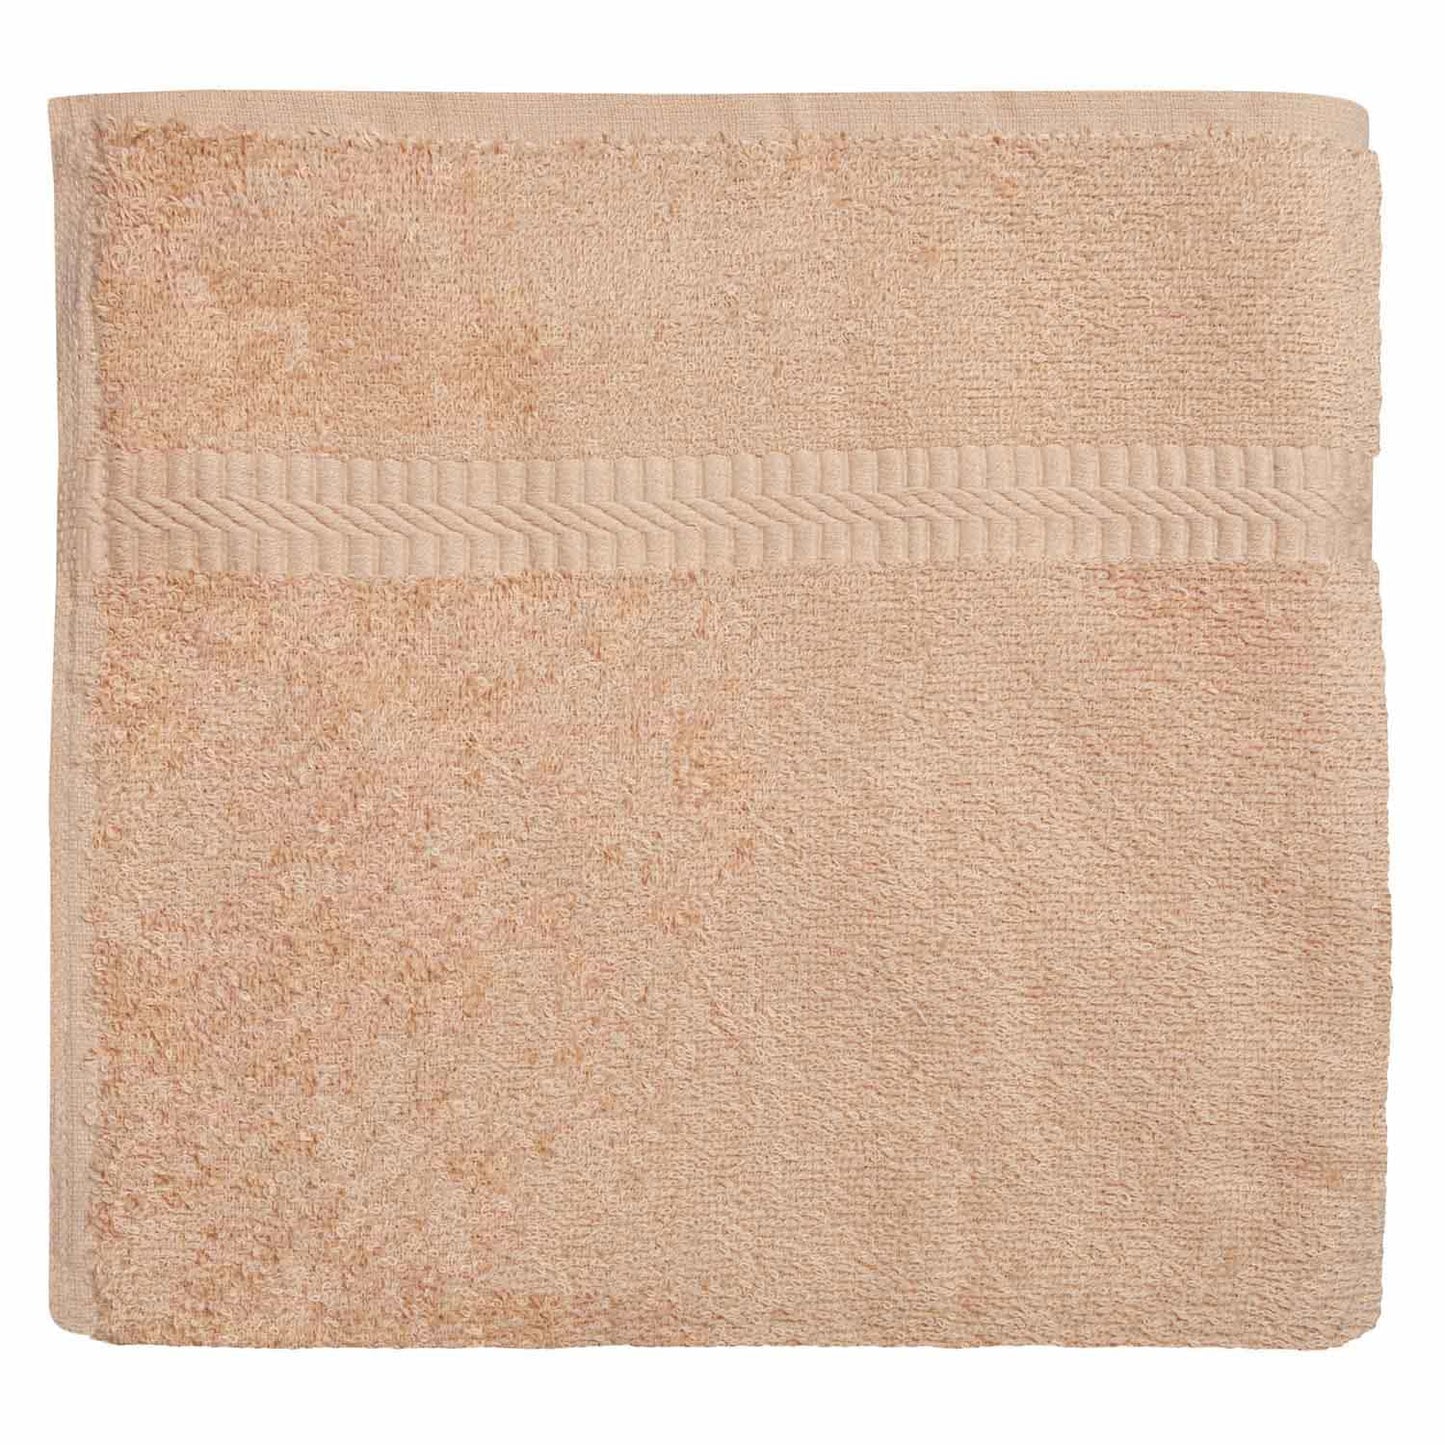 American Dawn | 24X50 Inch Beige With Dobby Border Hotel Towel | Bath Towel